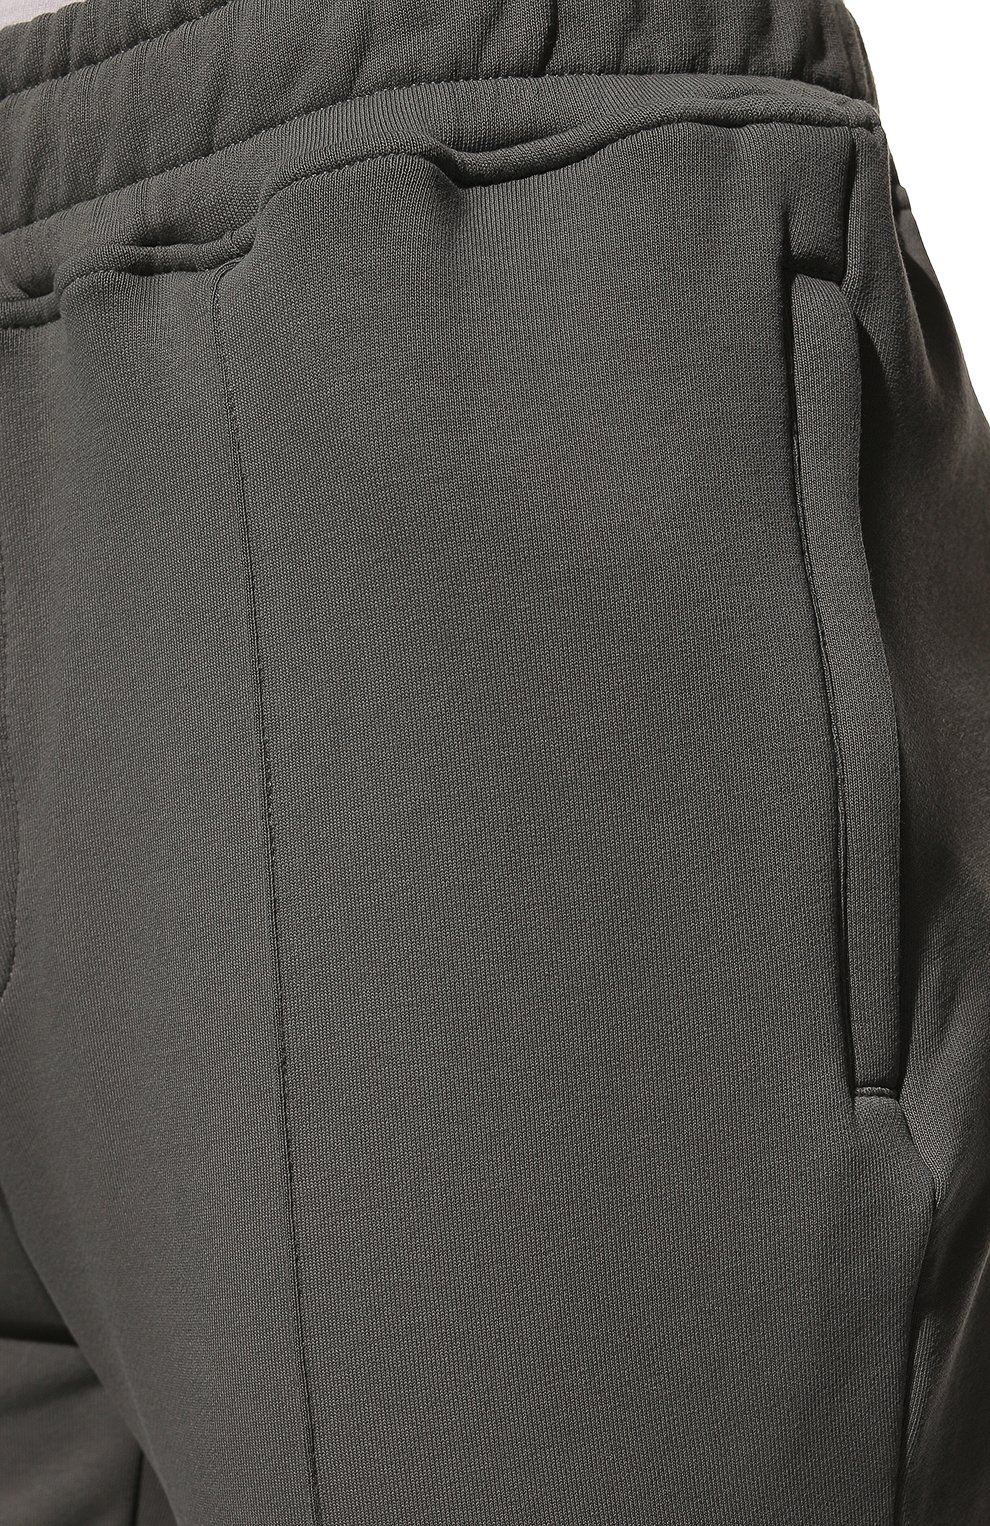 Мужские хлопковые брюки LIMITATO серого цвета, арт. H0LD 0N/TRACK PANTS | Фото 5 (Длина (брюки, джинсы): Стандартные; Случай: Повседневный; Материал внешний: Хлопок; Стили: Кэжуэл)